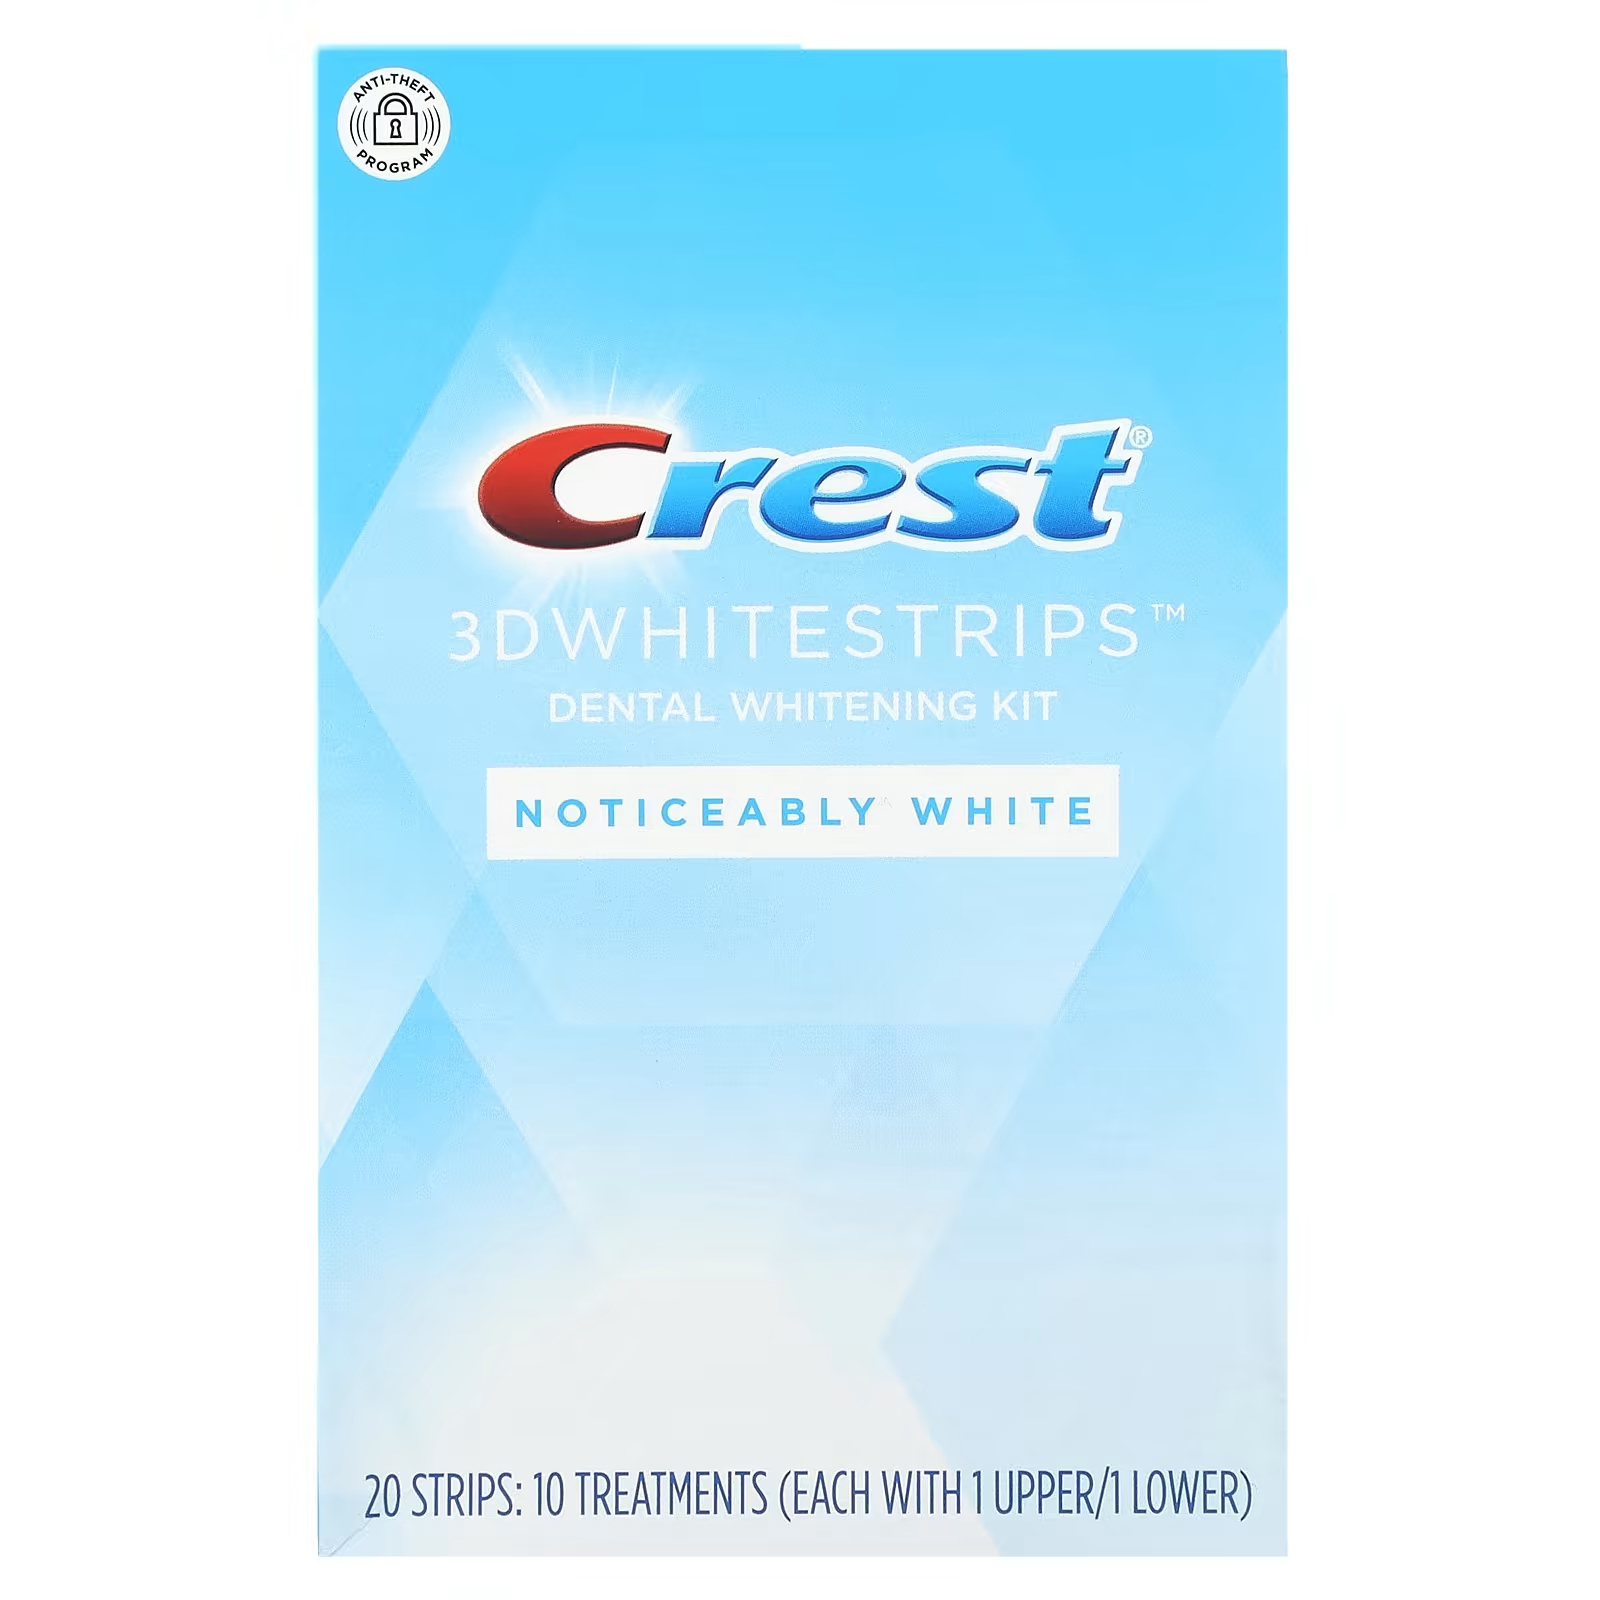 Набор для отбеливания зубов Crest 3D Whitestrips заметный белый цвет, 20 шт. набор для отбеливания зубов crest 3d whitestrips sensitive 36 полосок